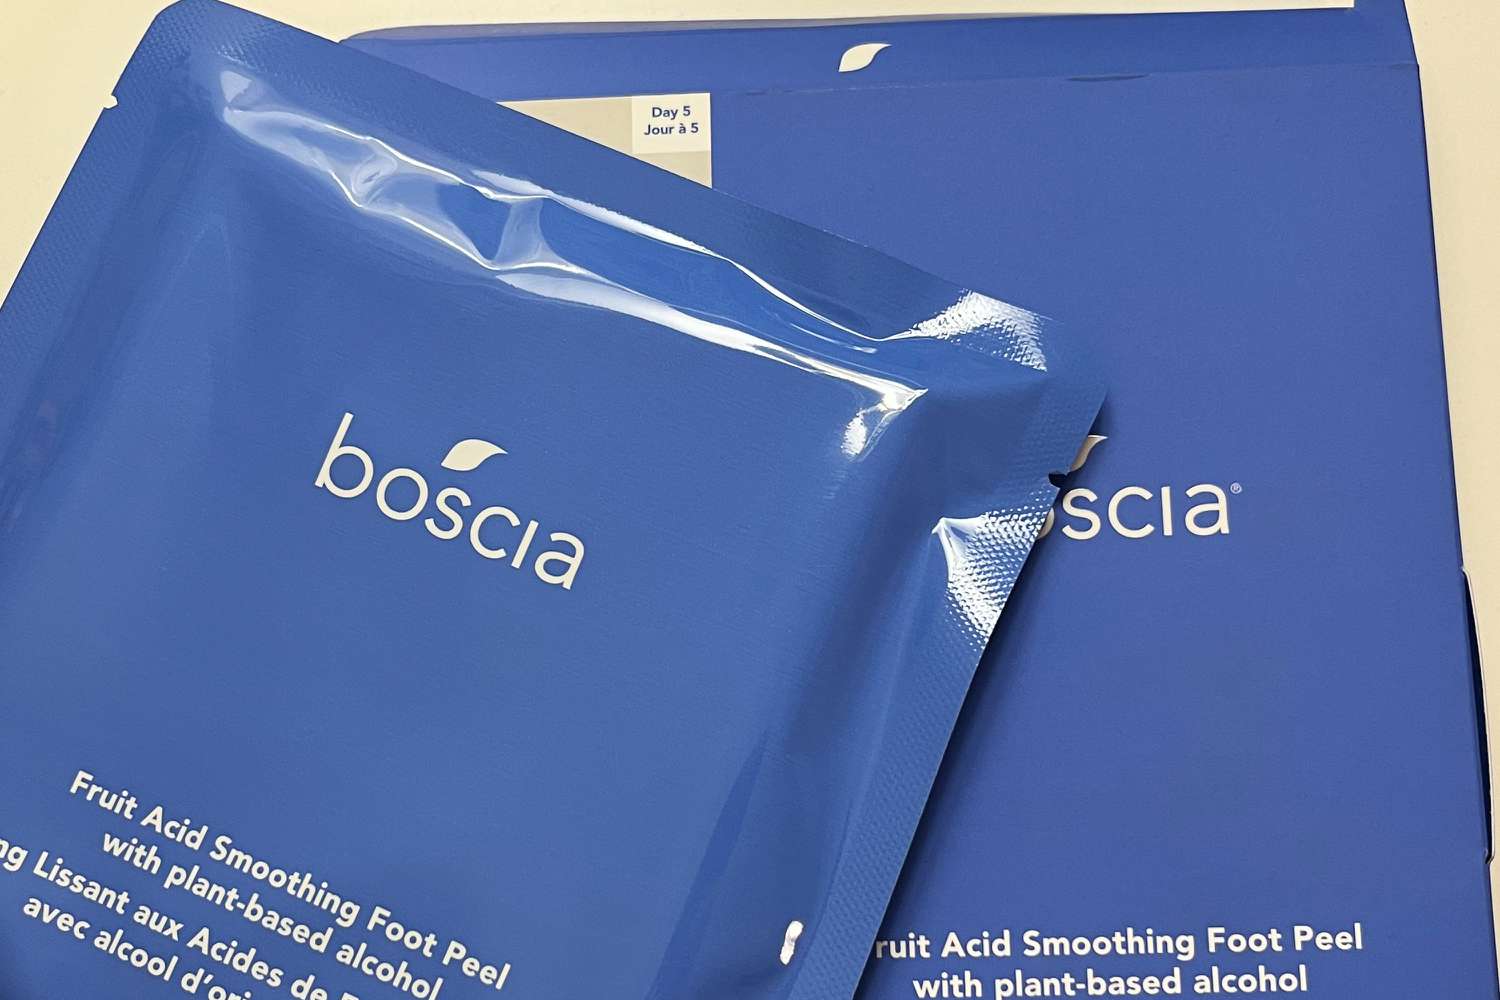 Boscia Fruit Acid Smoothing Foot Peel packaging on bed